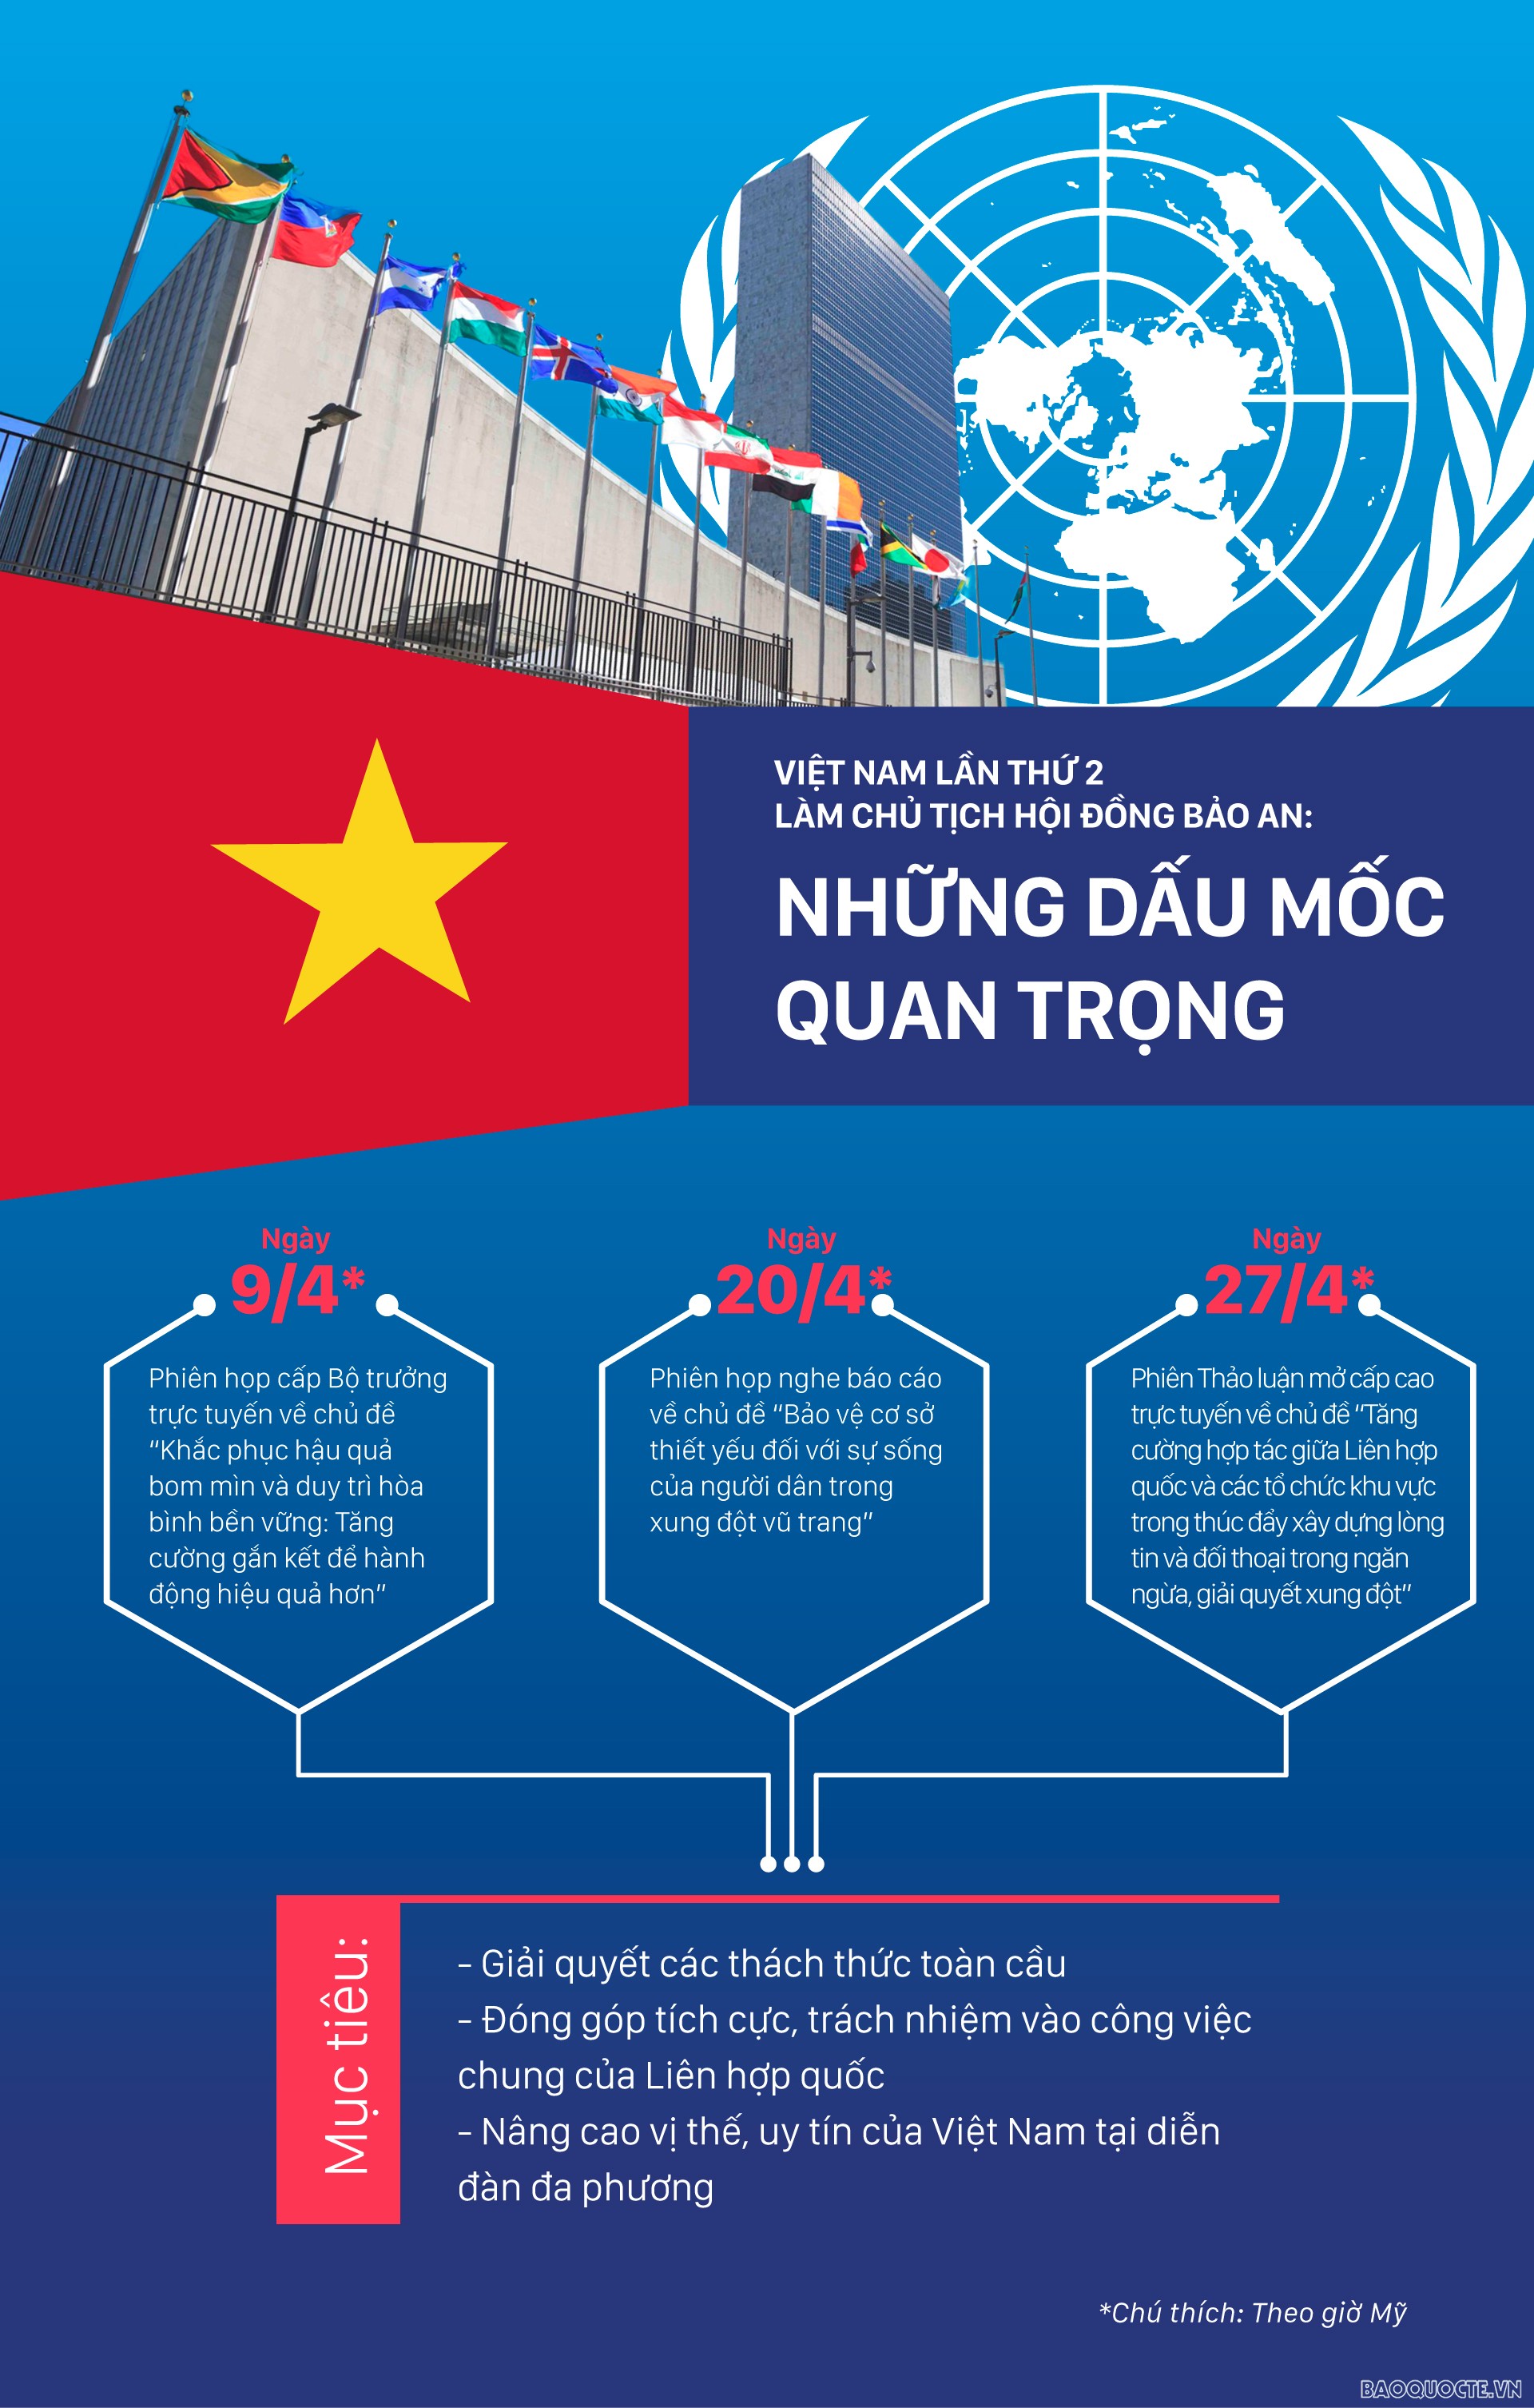 Những dấu mốc quan trọng khi Việt Nam làm Chủ tịch Hội đồng Bảo an Liên hợp quốc trong tháng 4.